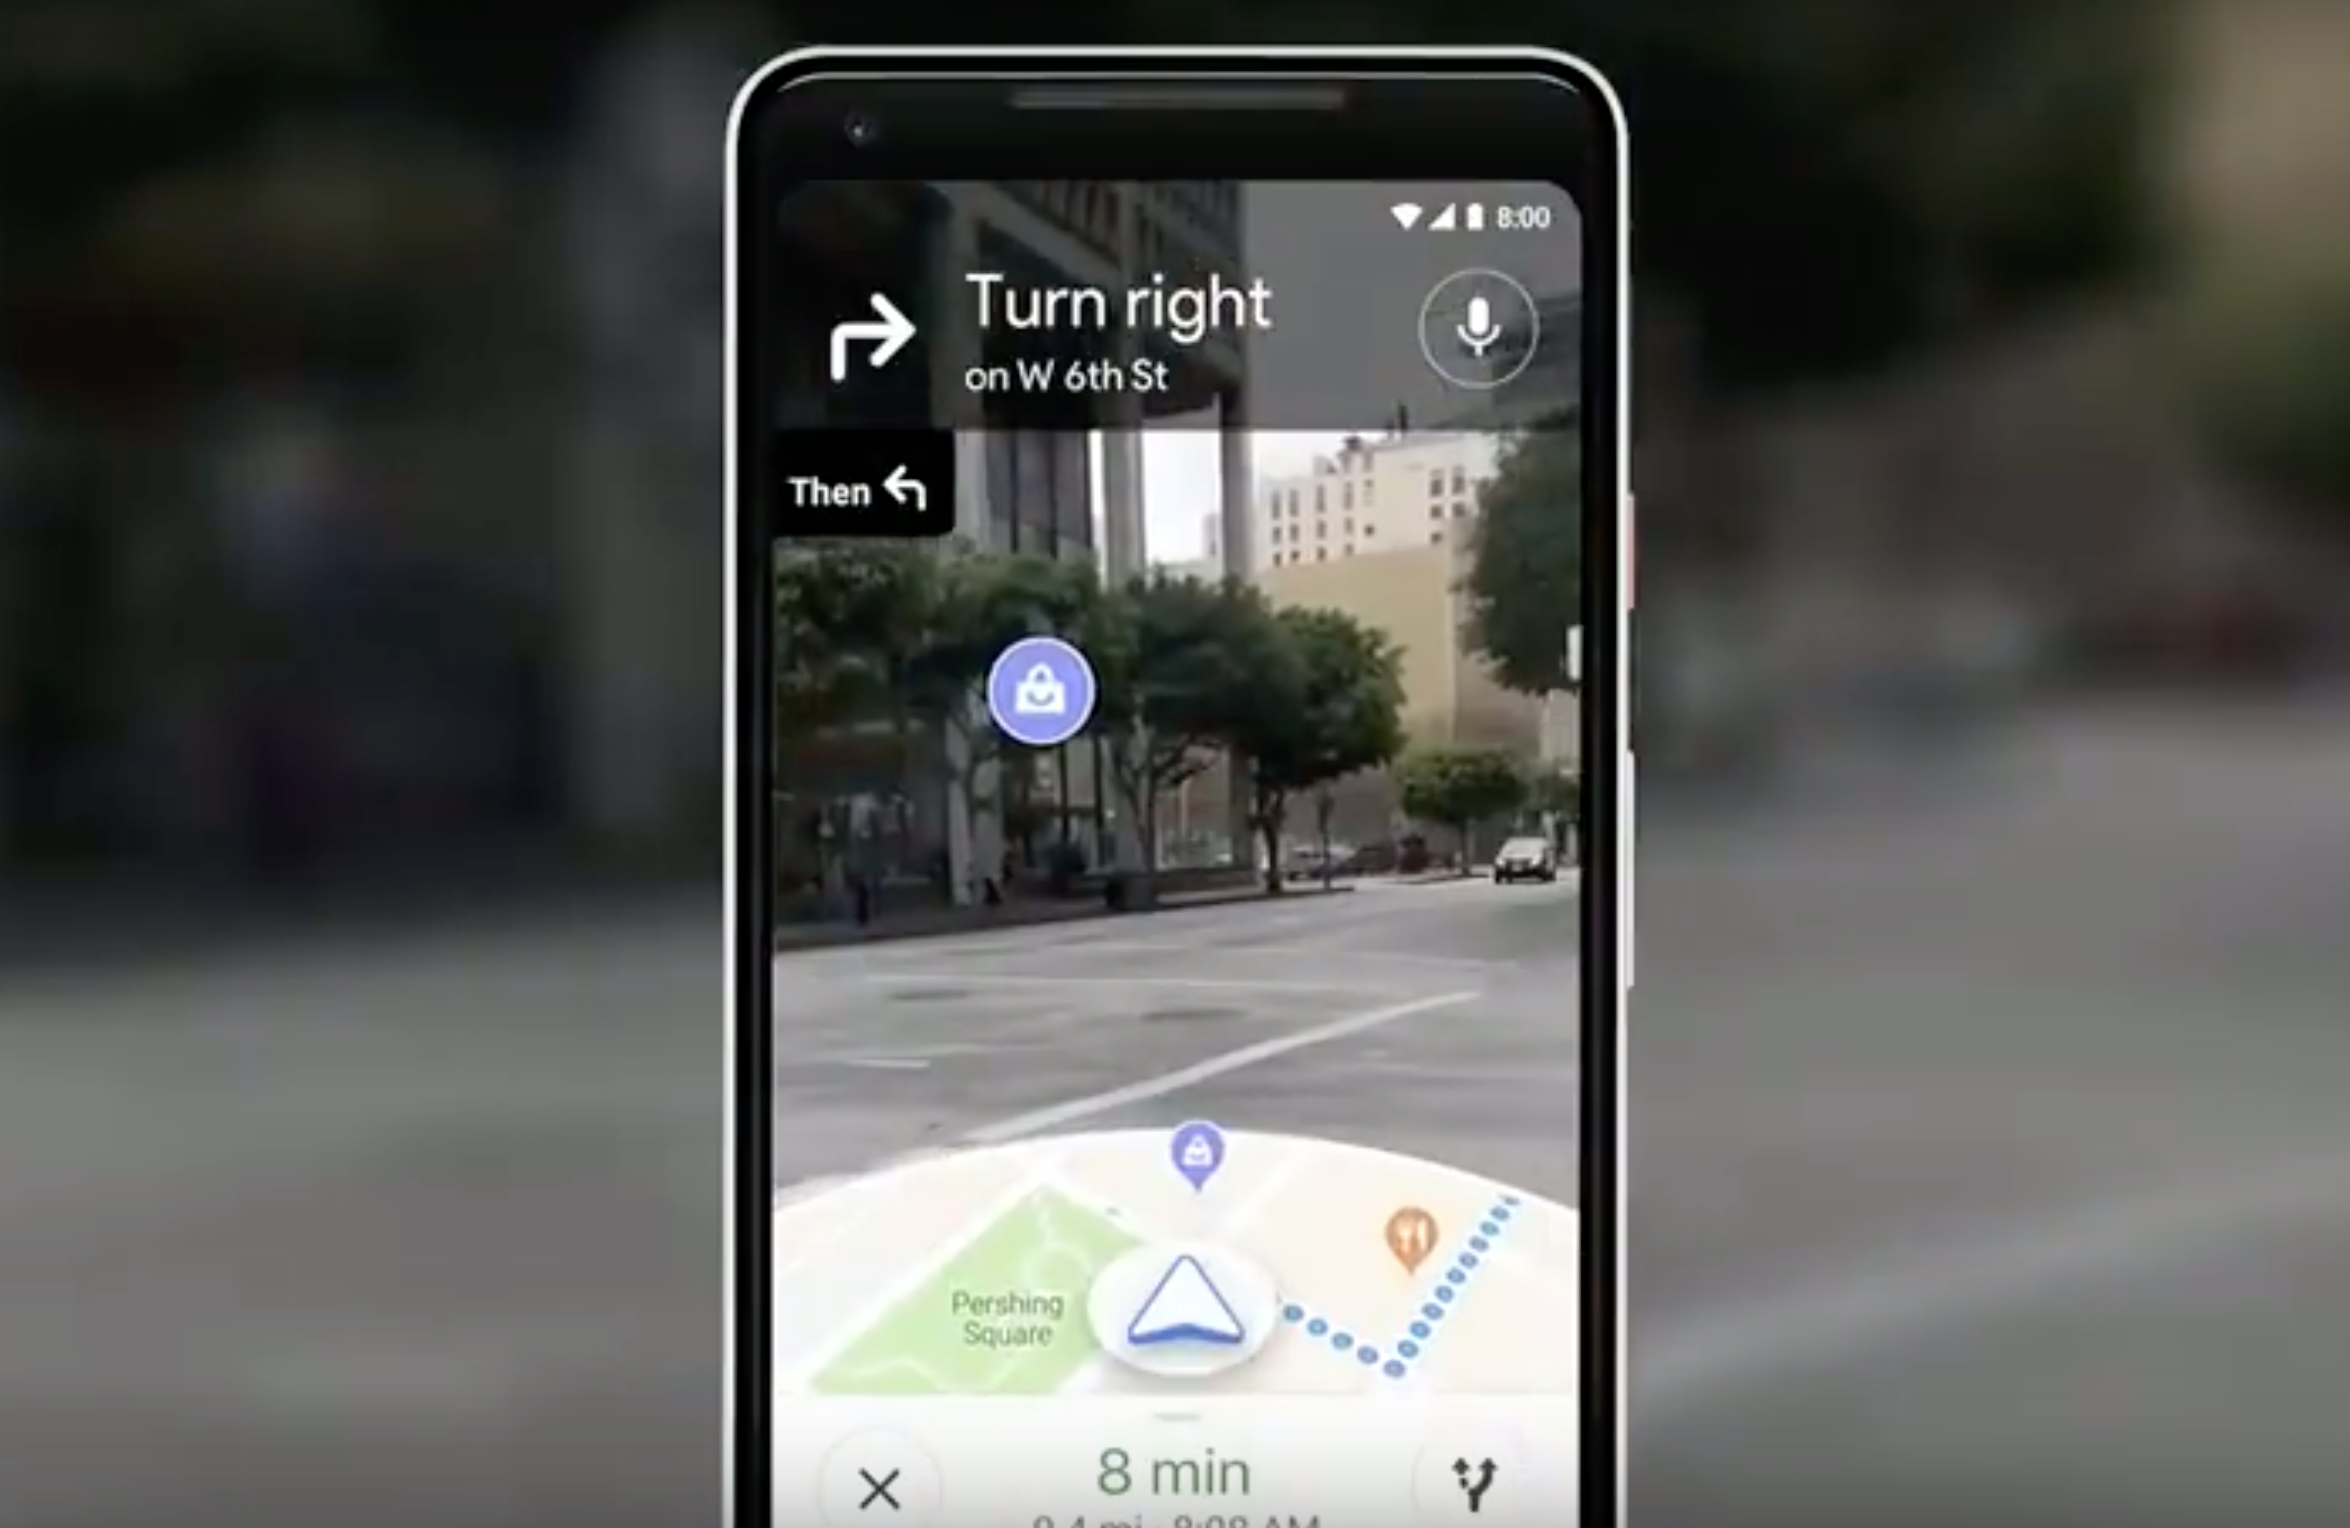  Google Maps membantu pengguna menavigasi menggunakan kamera ponsel cerdas mereka